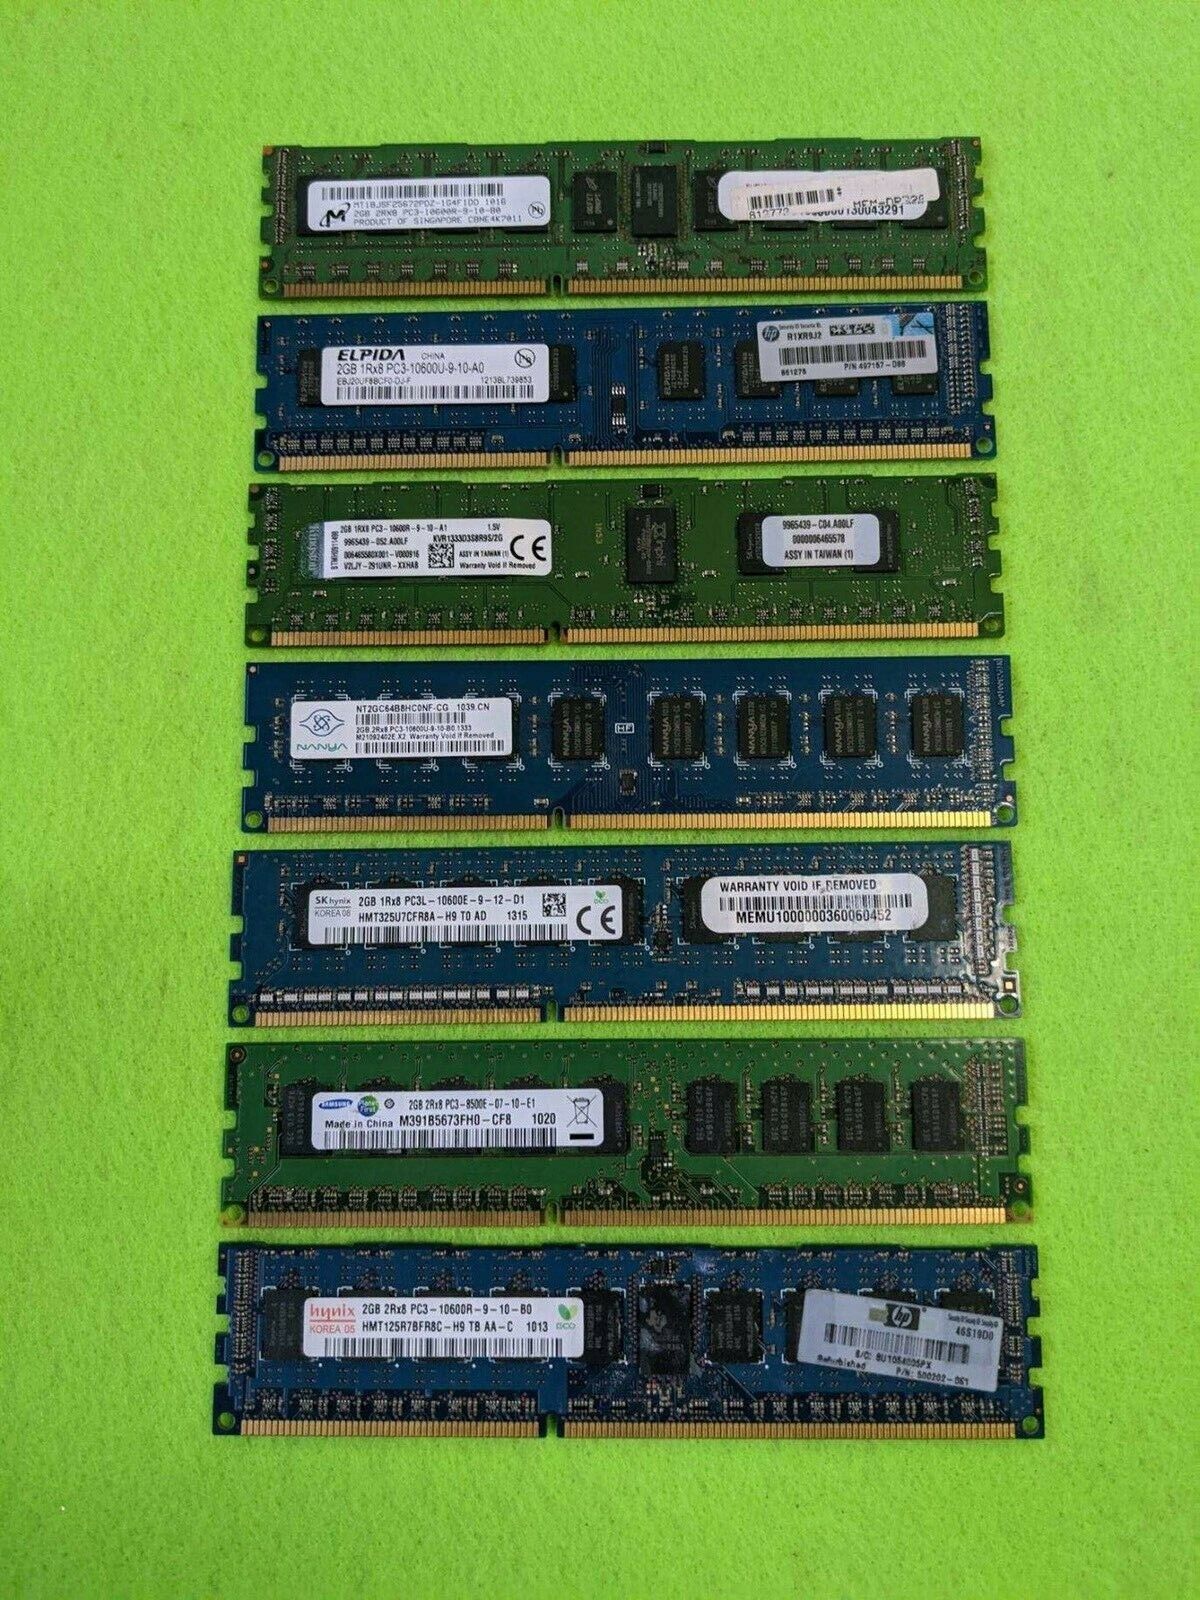 Samsung/Kingston/Hynix etc 2GB PC3 DESKTOP MEMORY (168 MODULES TOTAL) 